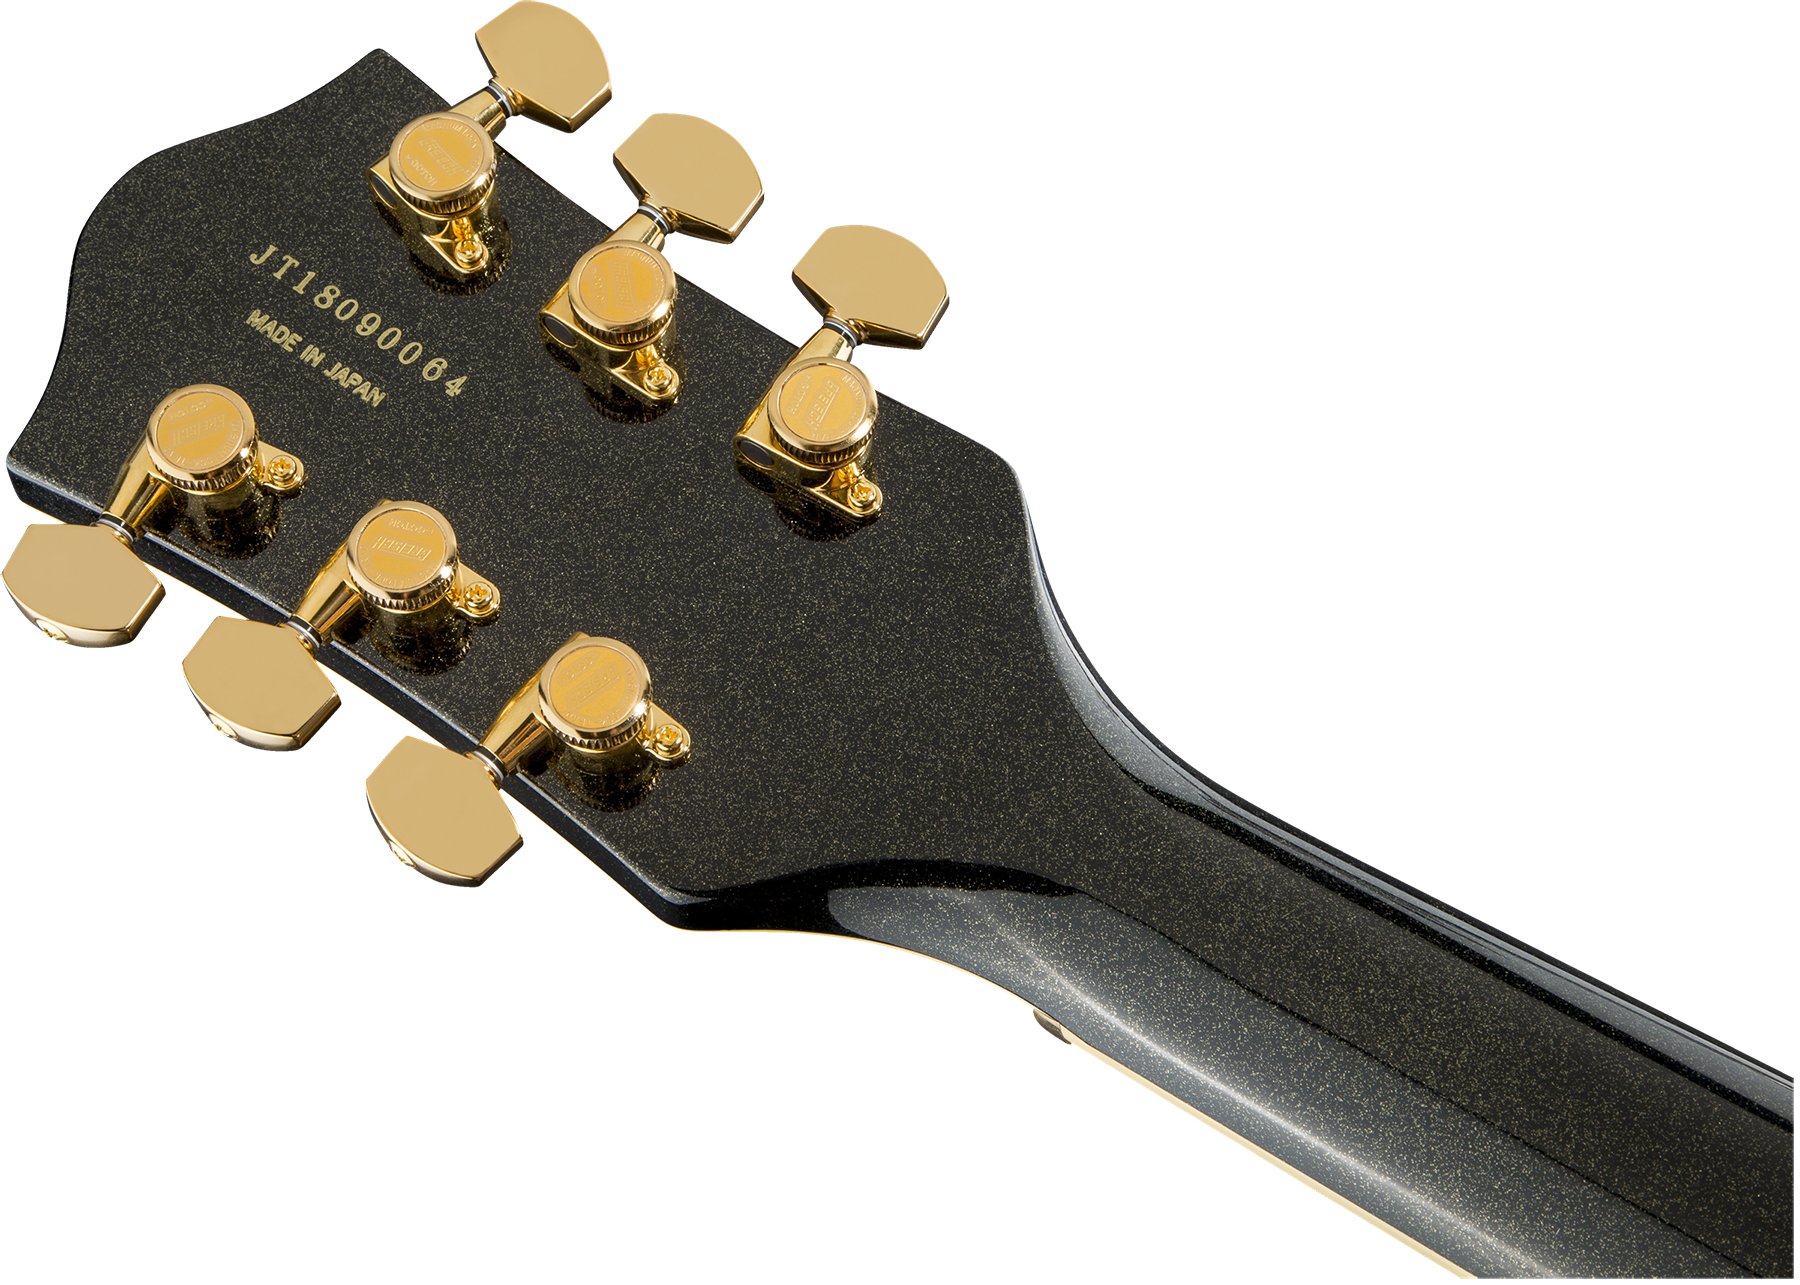 Gretsch Steve Wariner G6120t-sw Nashville Japon Signature Hh Bigsby Eb - Magic Black - Semi hollow elektriche gitaar - Variation 3